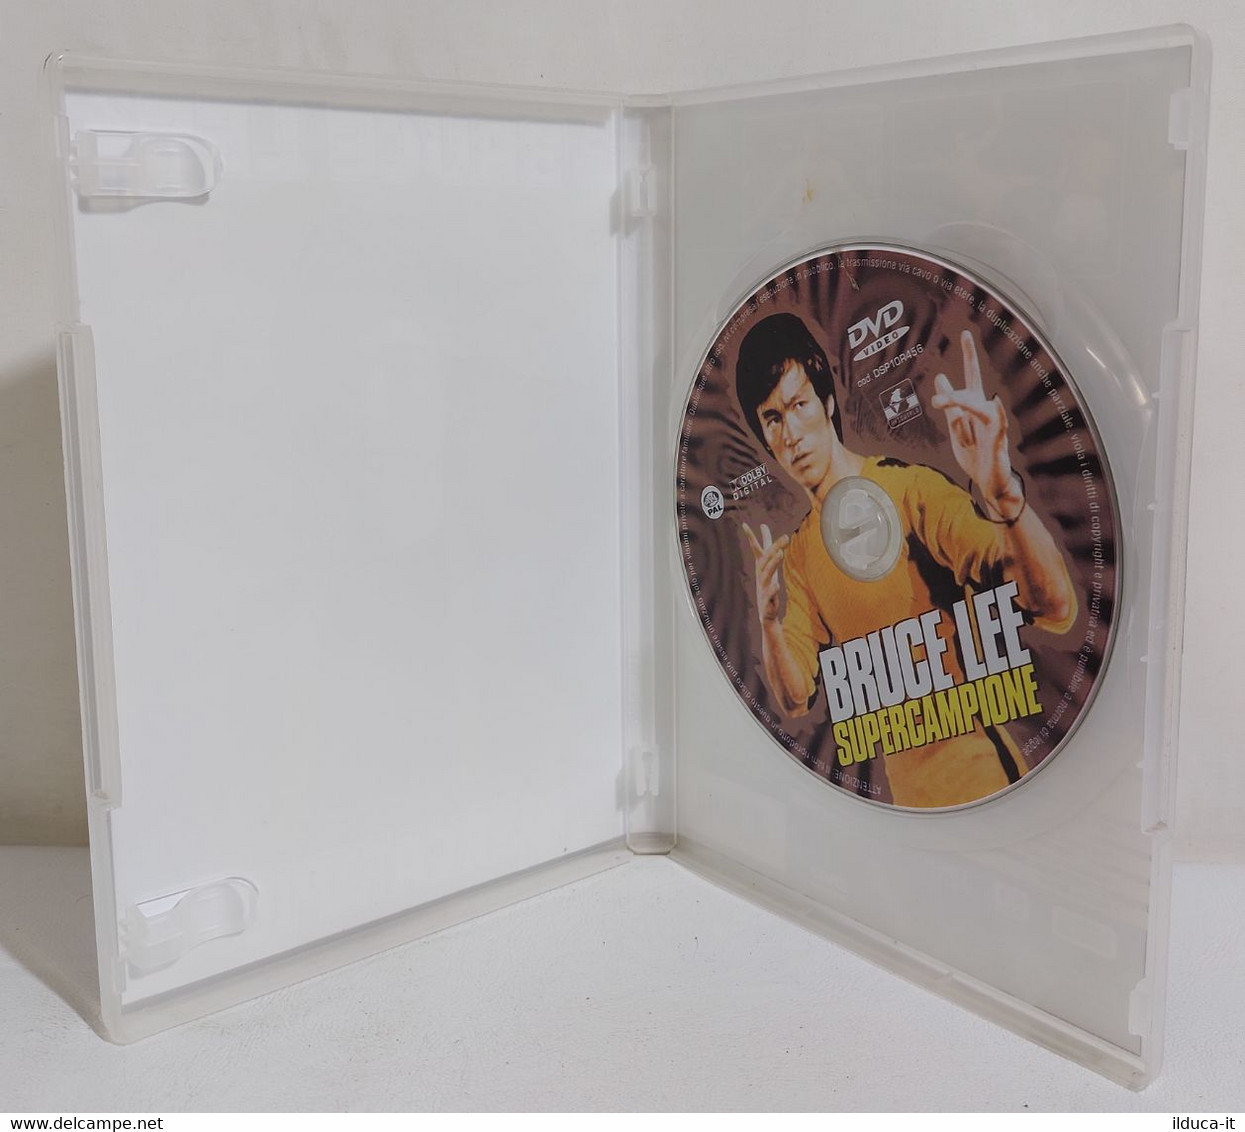 I111056 DVD Documentario - Bruce Lee Supercampione - Dokumentarfilme